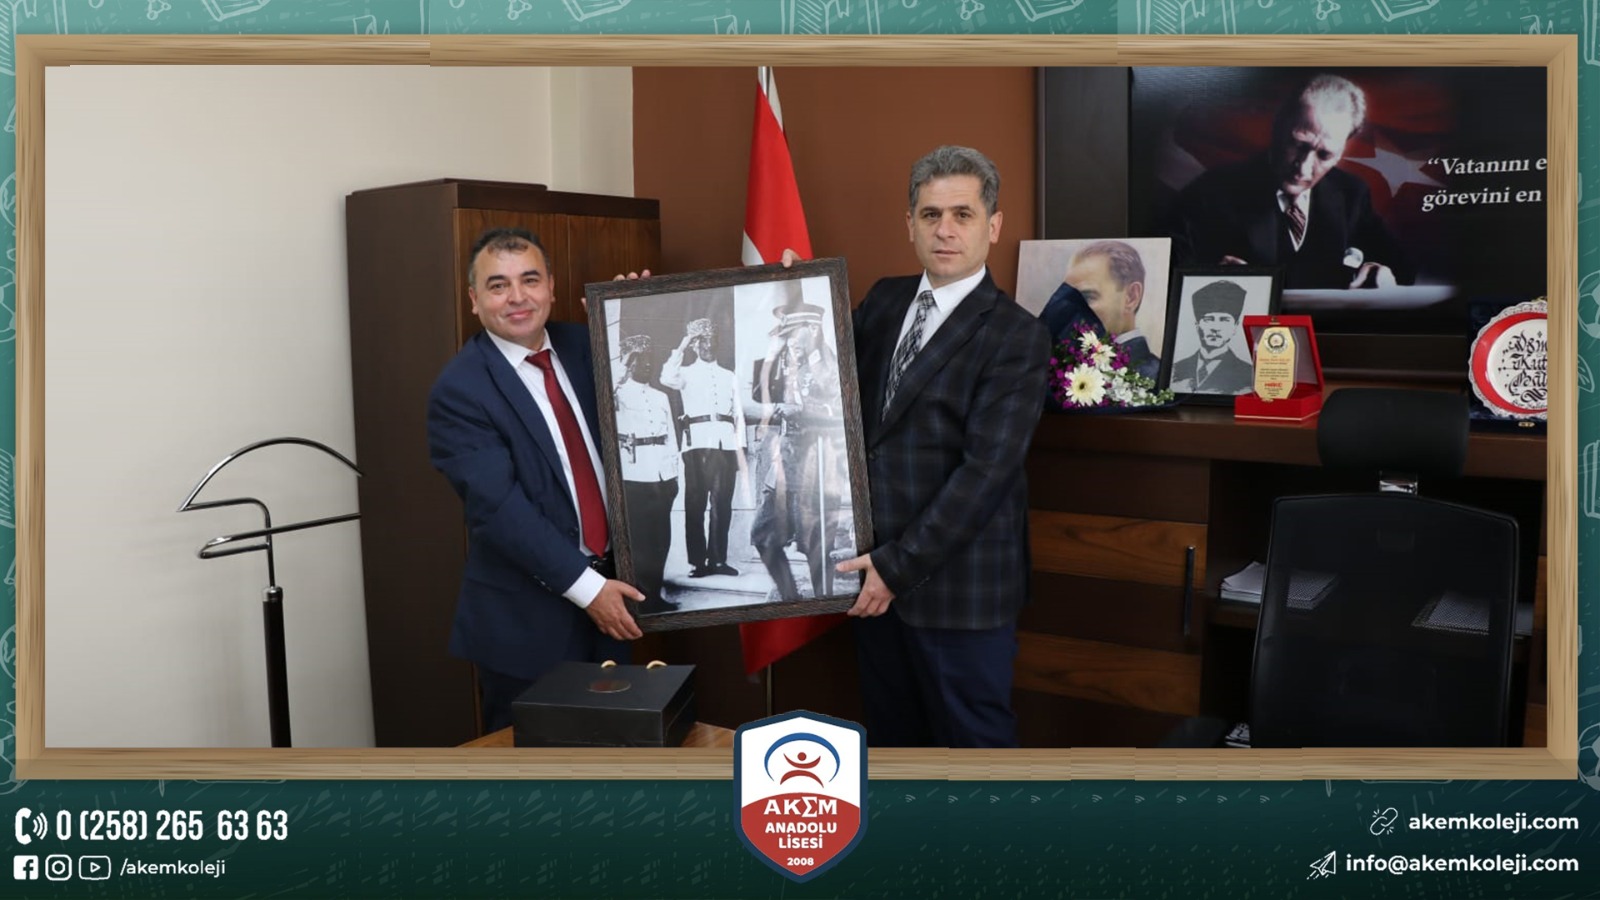 Özel Akem Anadolu Lisesi olarak İl Emniyet Müdür Yardımcı Osman Balak’ı Polis Teşkilatının kuruluşunun 177 .yılında ziyaret ettik